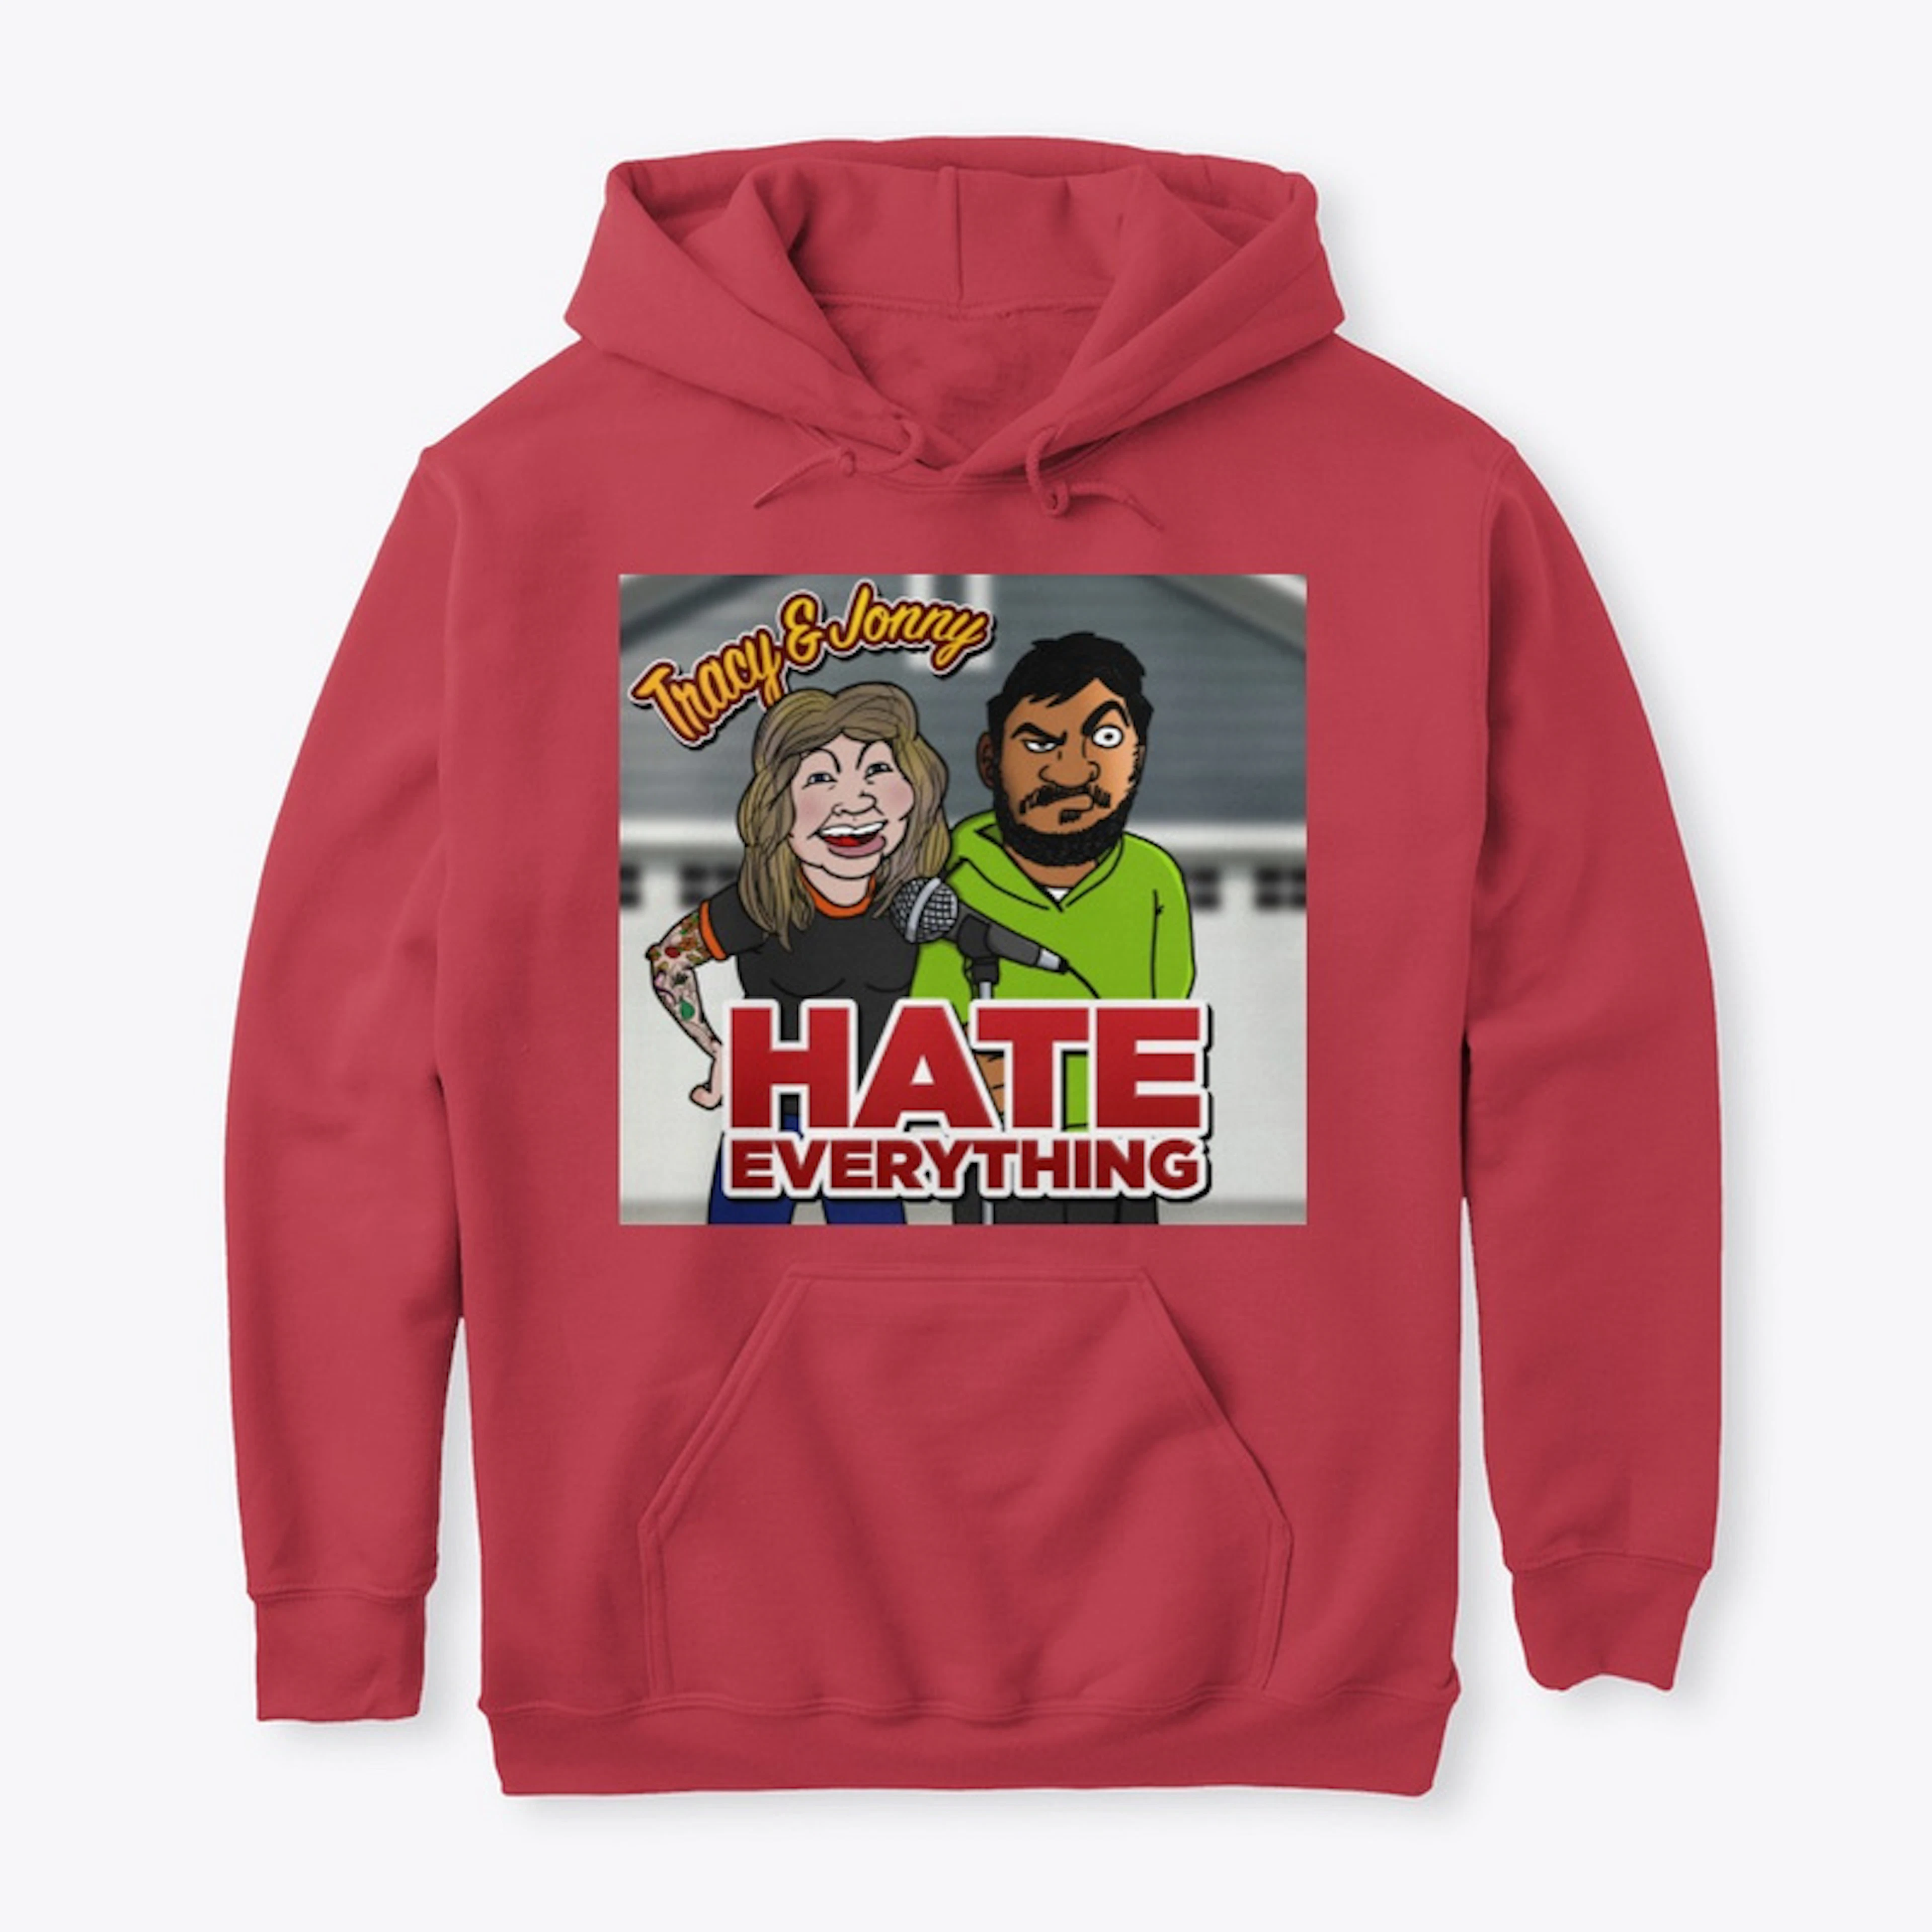 Hate Everything - Hoodies